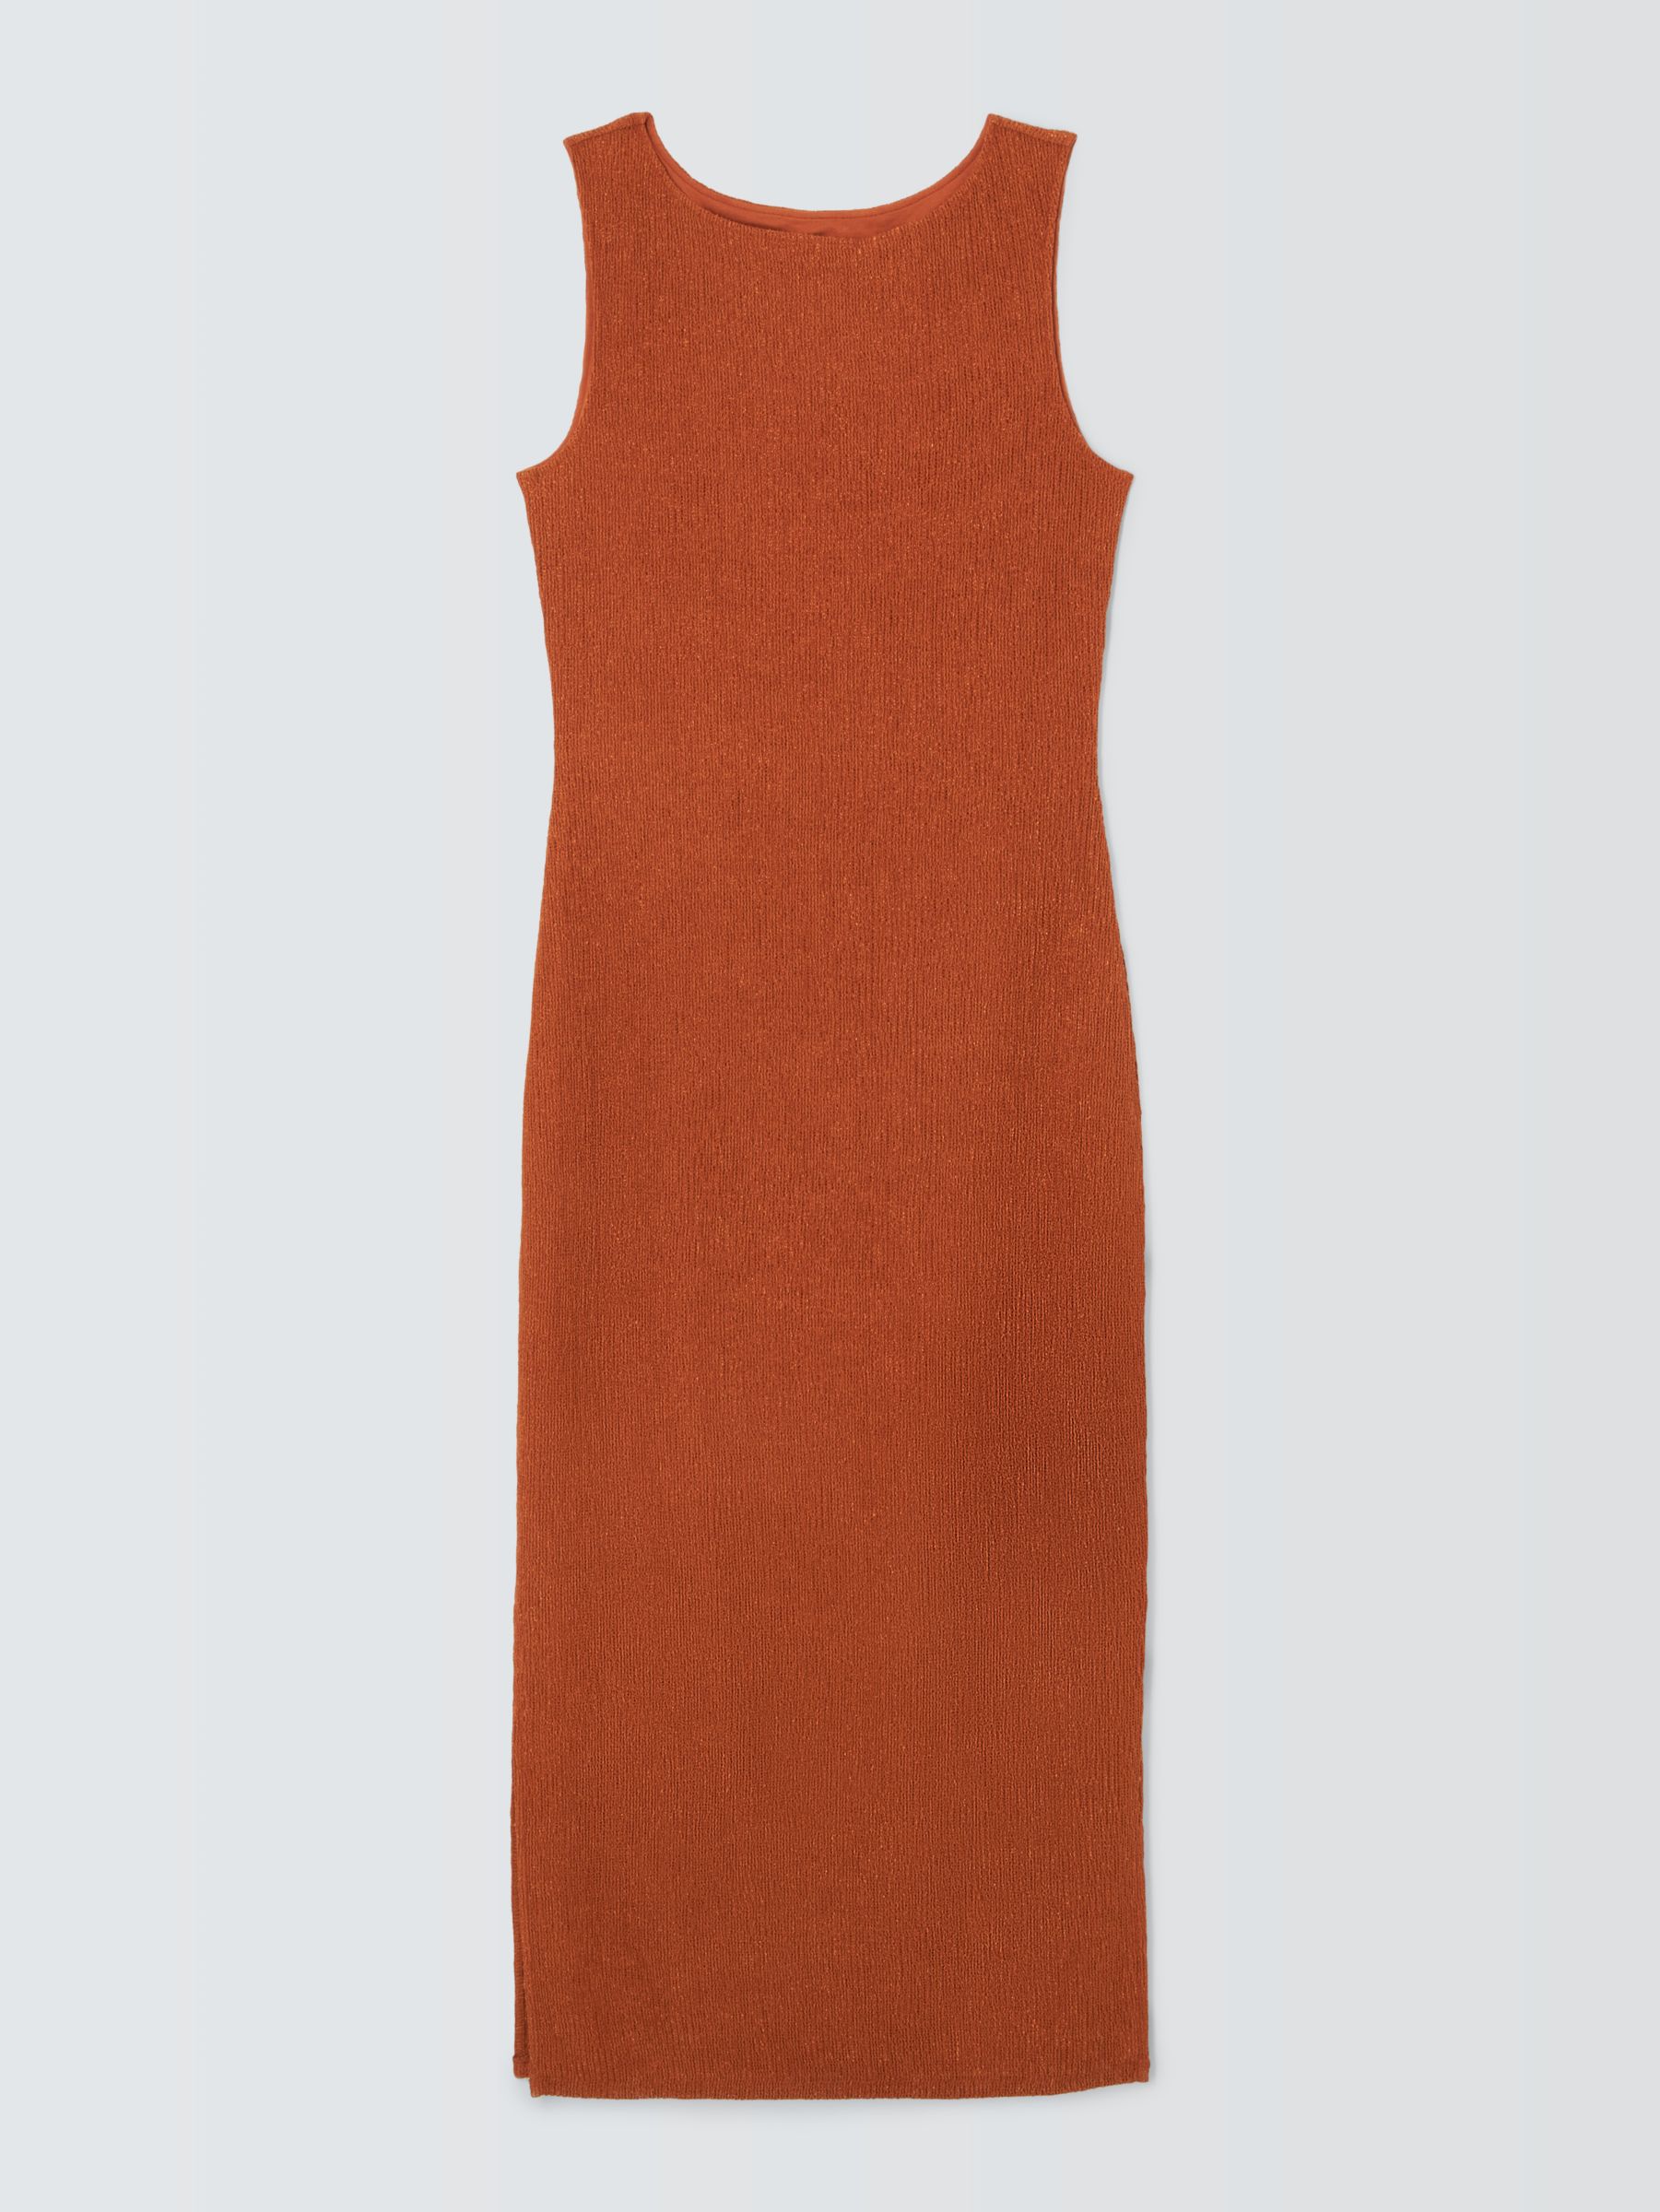 John Lewis Crinkle Jersey Dress, Dark Orange, 18